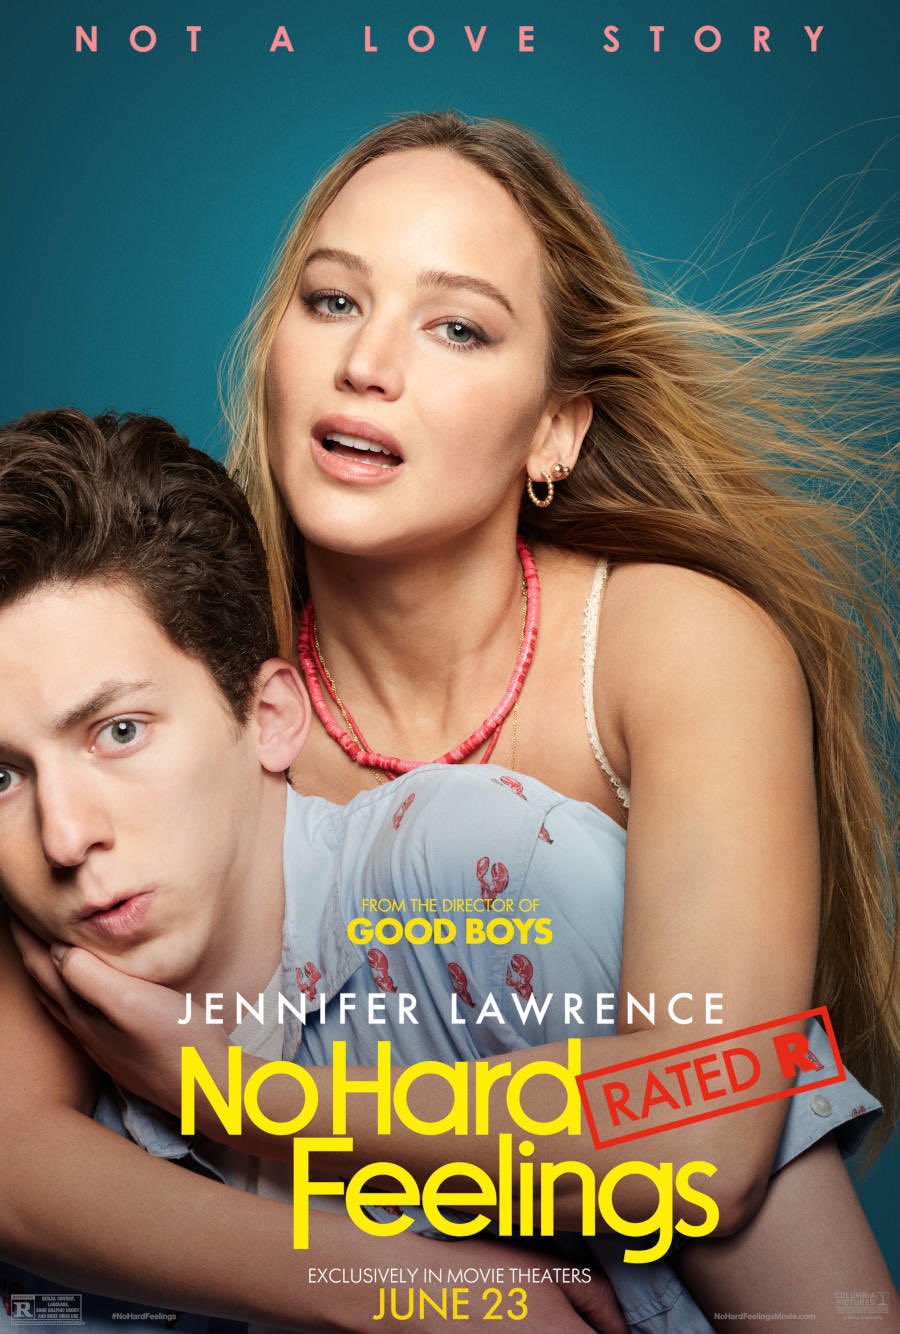 Jennifer Lawrence stars in No Hard Feelings movie trailer